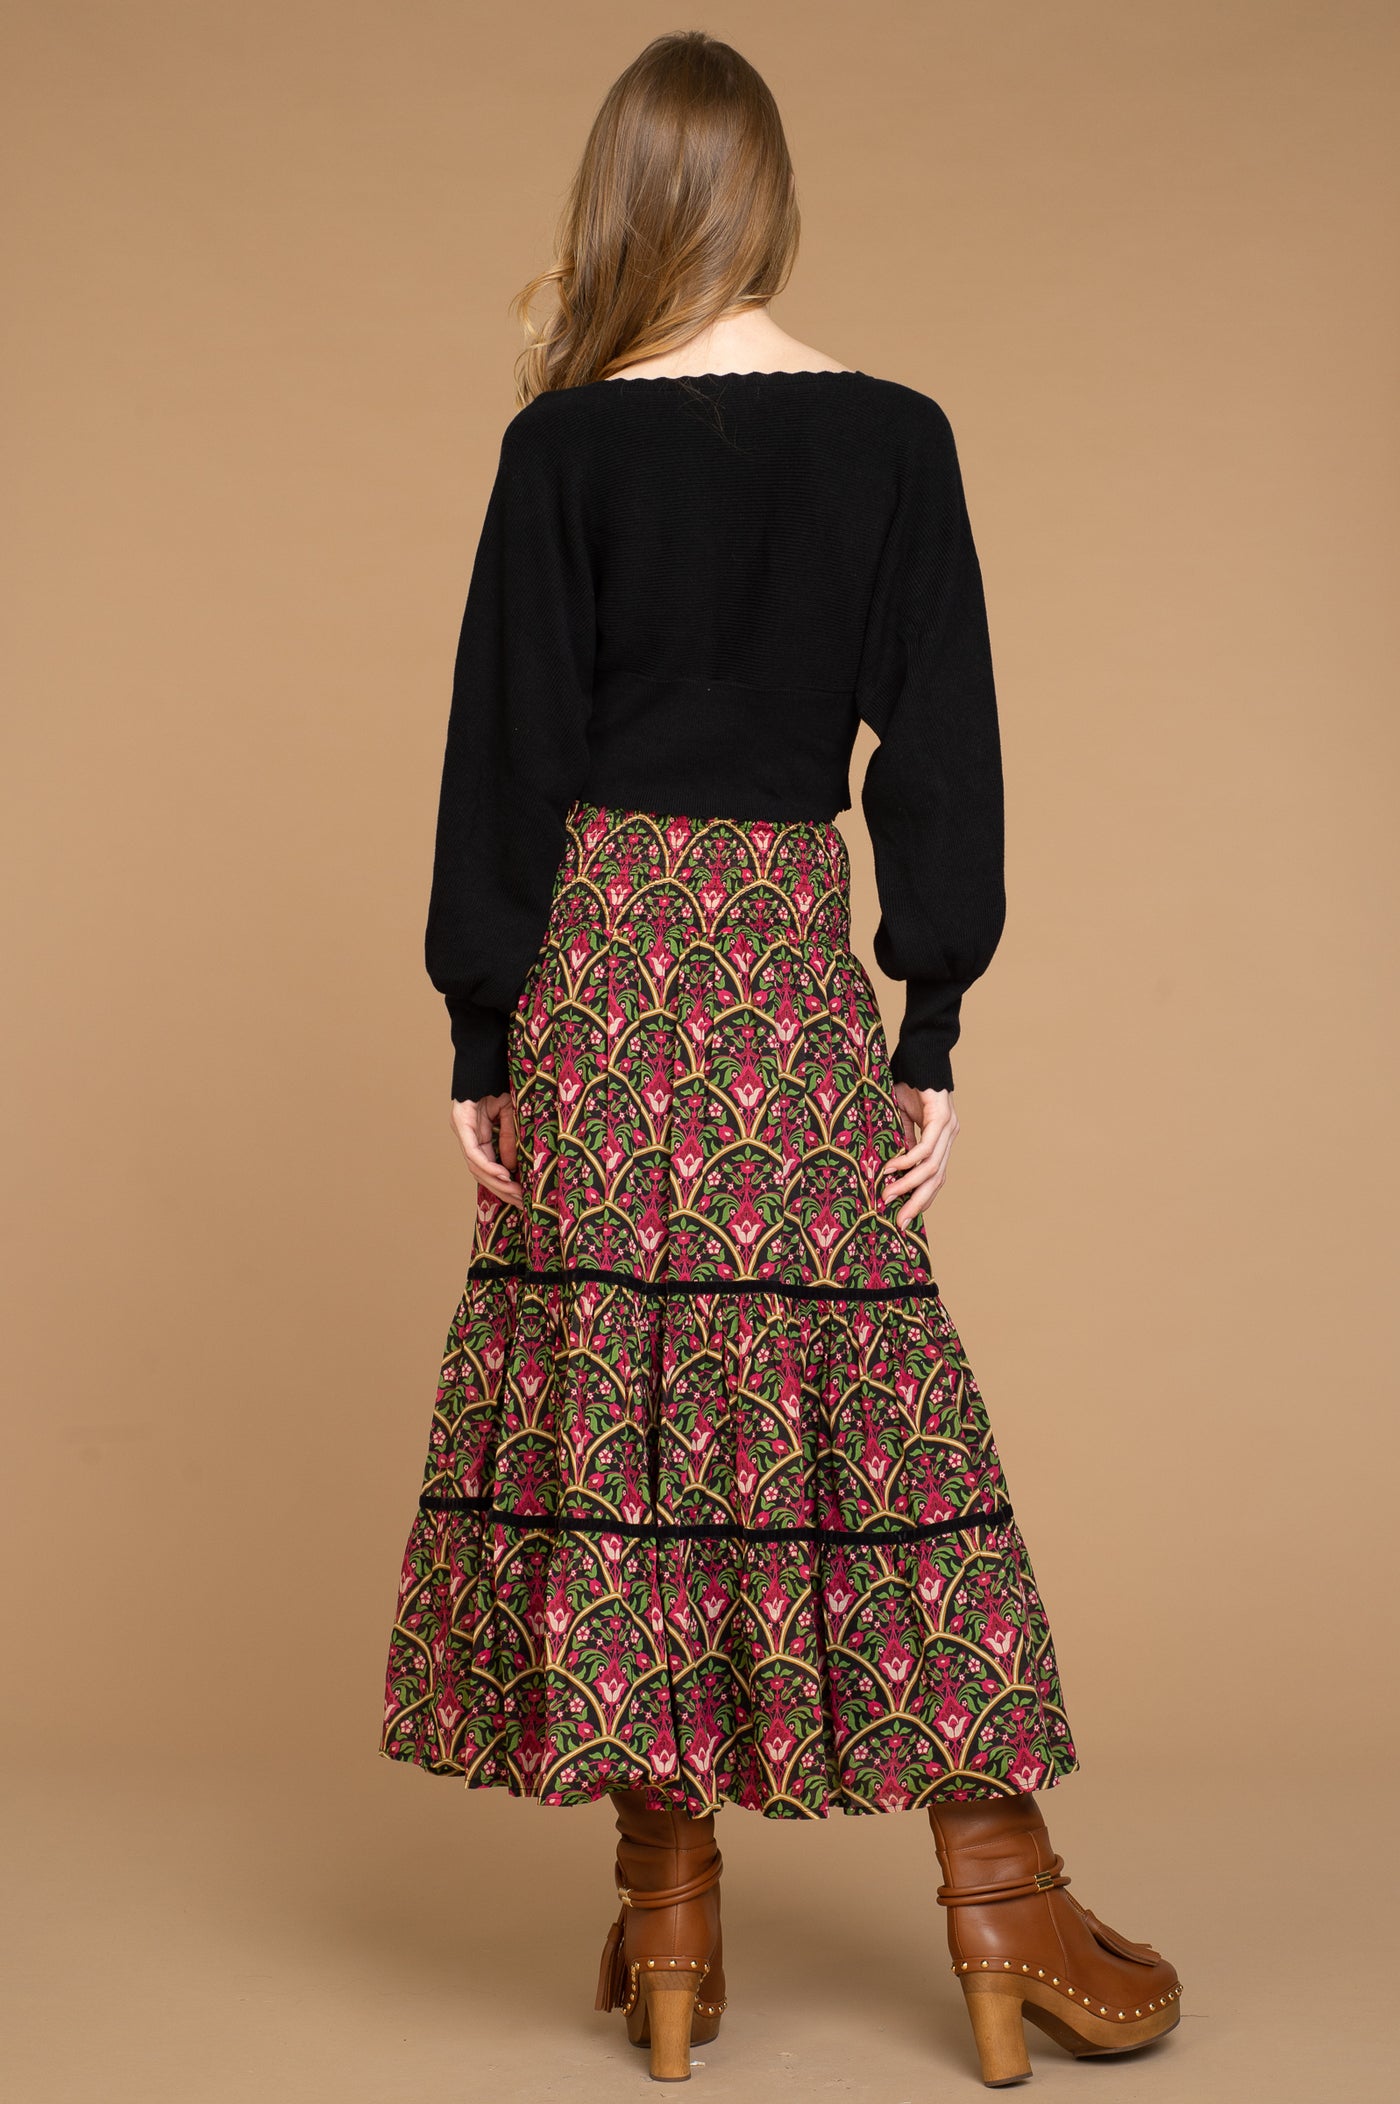 Izzy Skirt Dress in Moroccan Multi